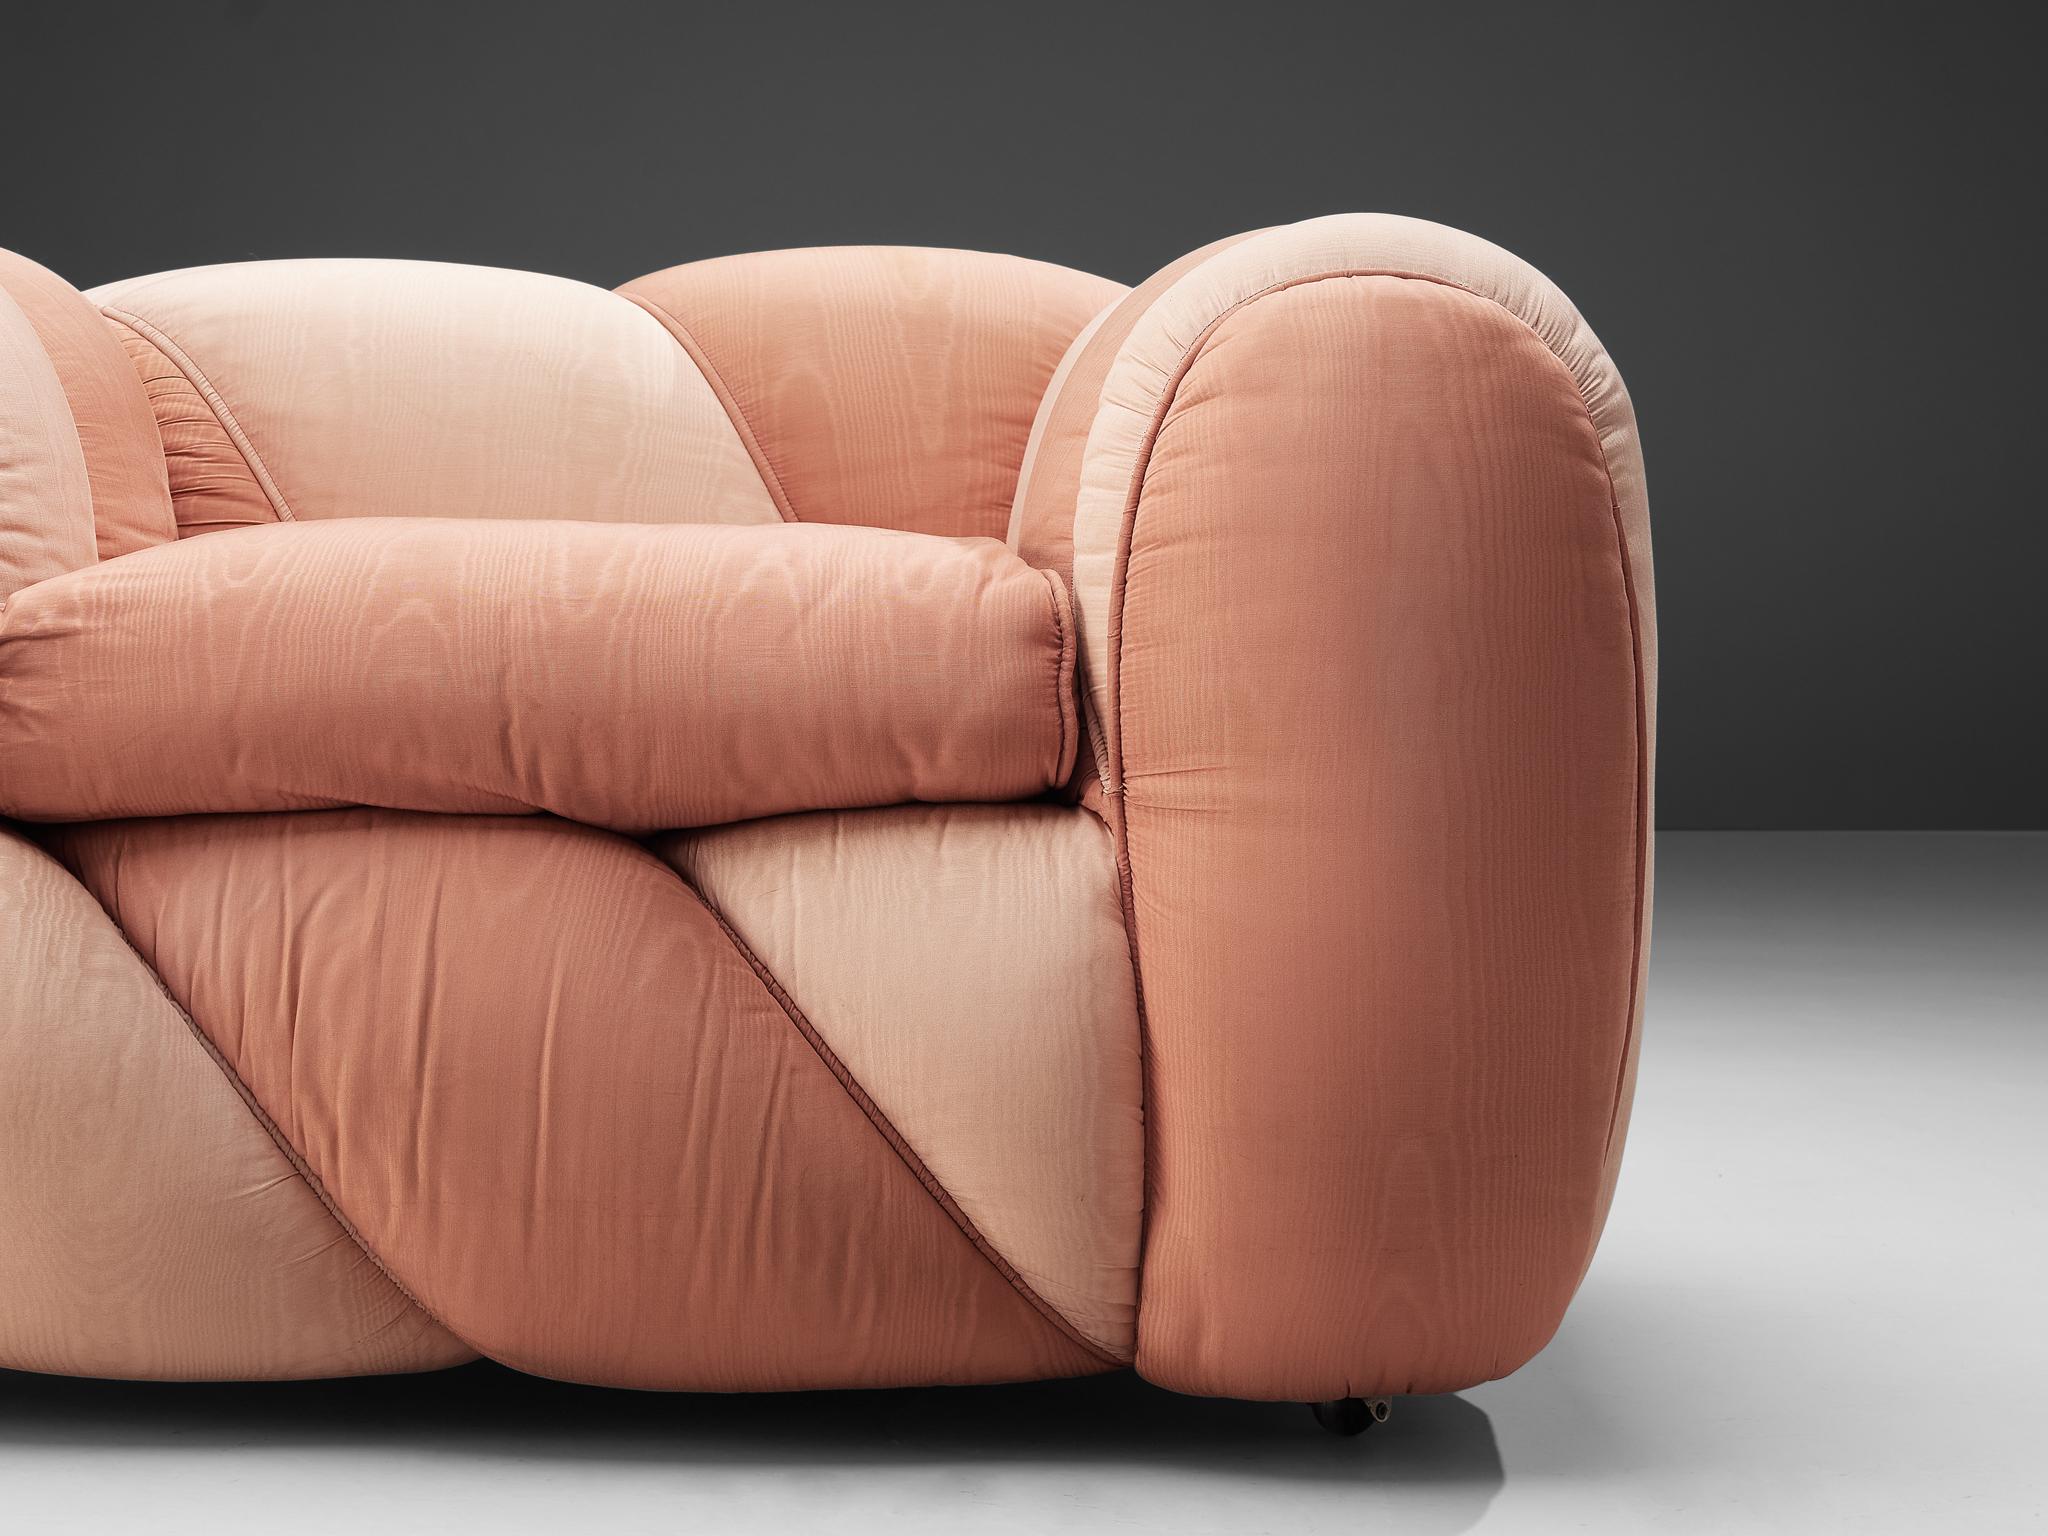 Fin du 20e siècle Chaise longue Vivai del Sud avec revêtement en tissu rose  en vente